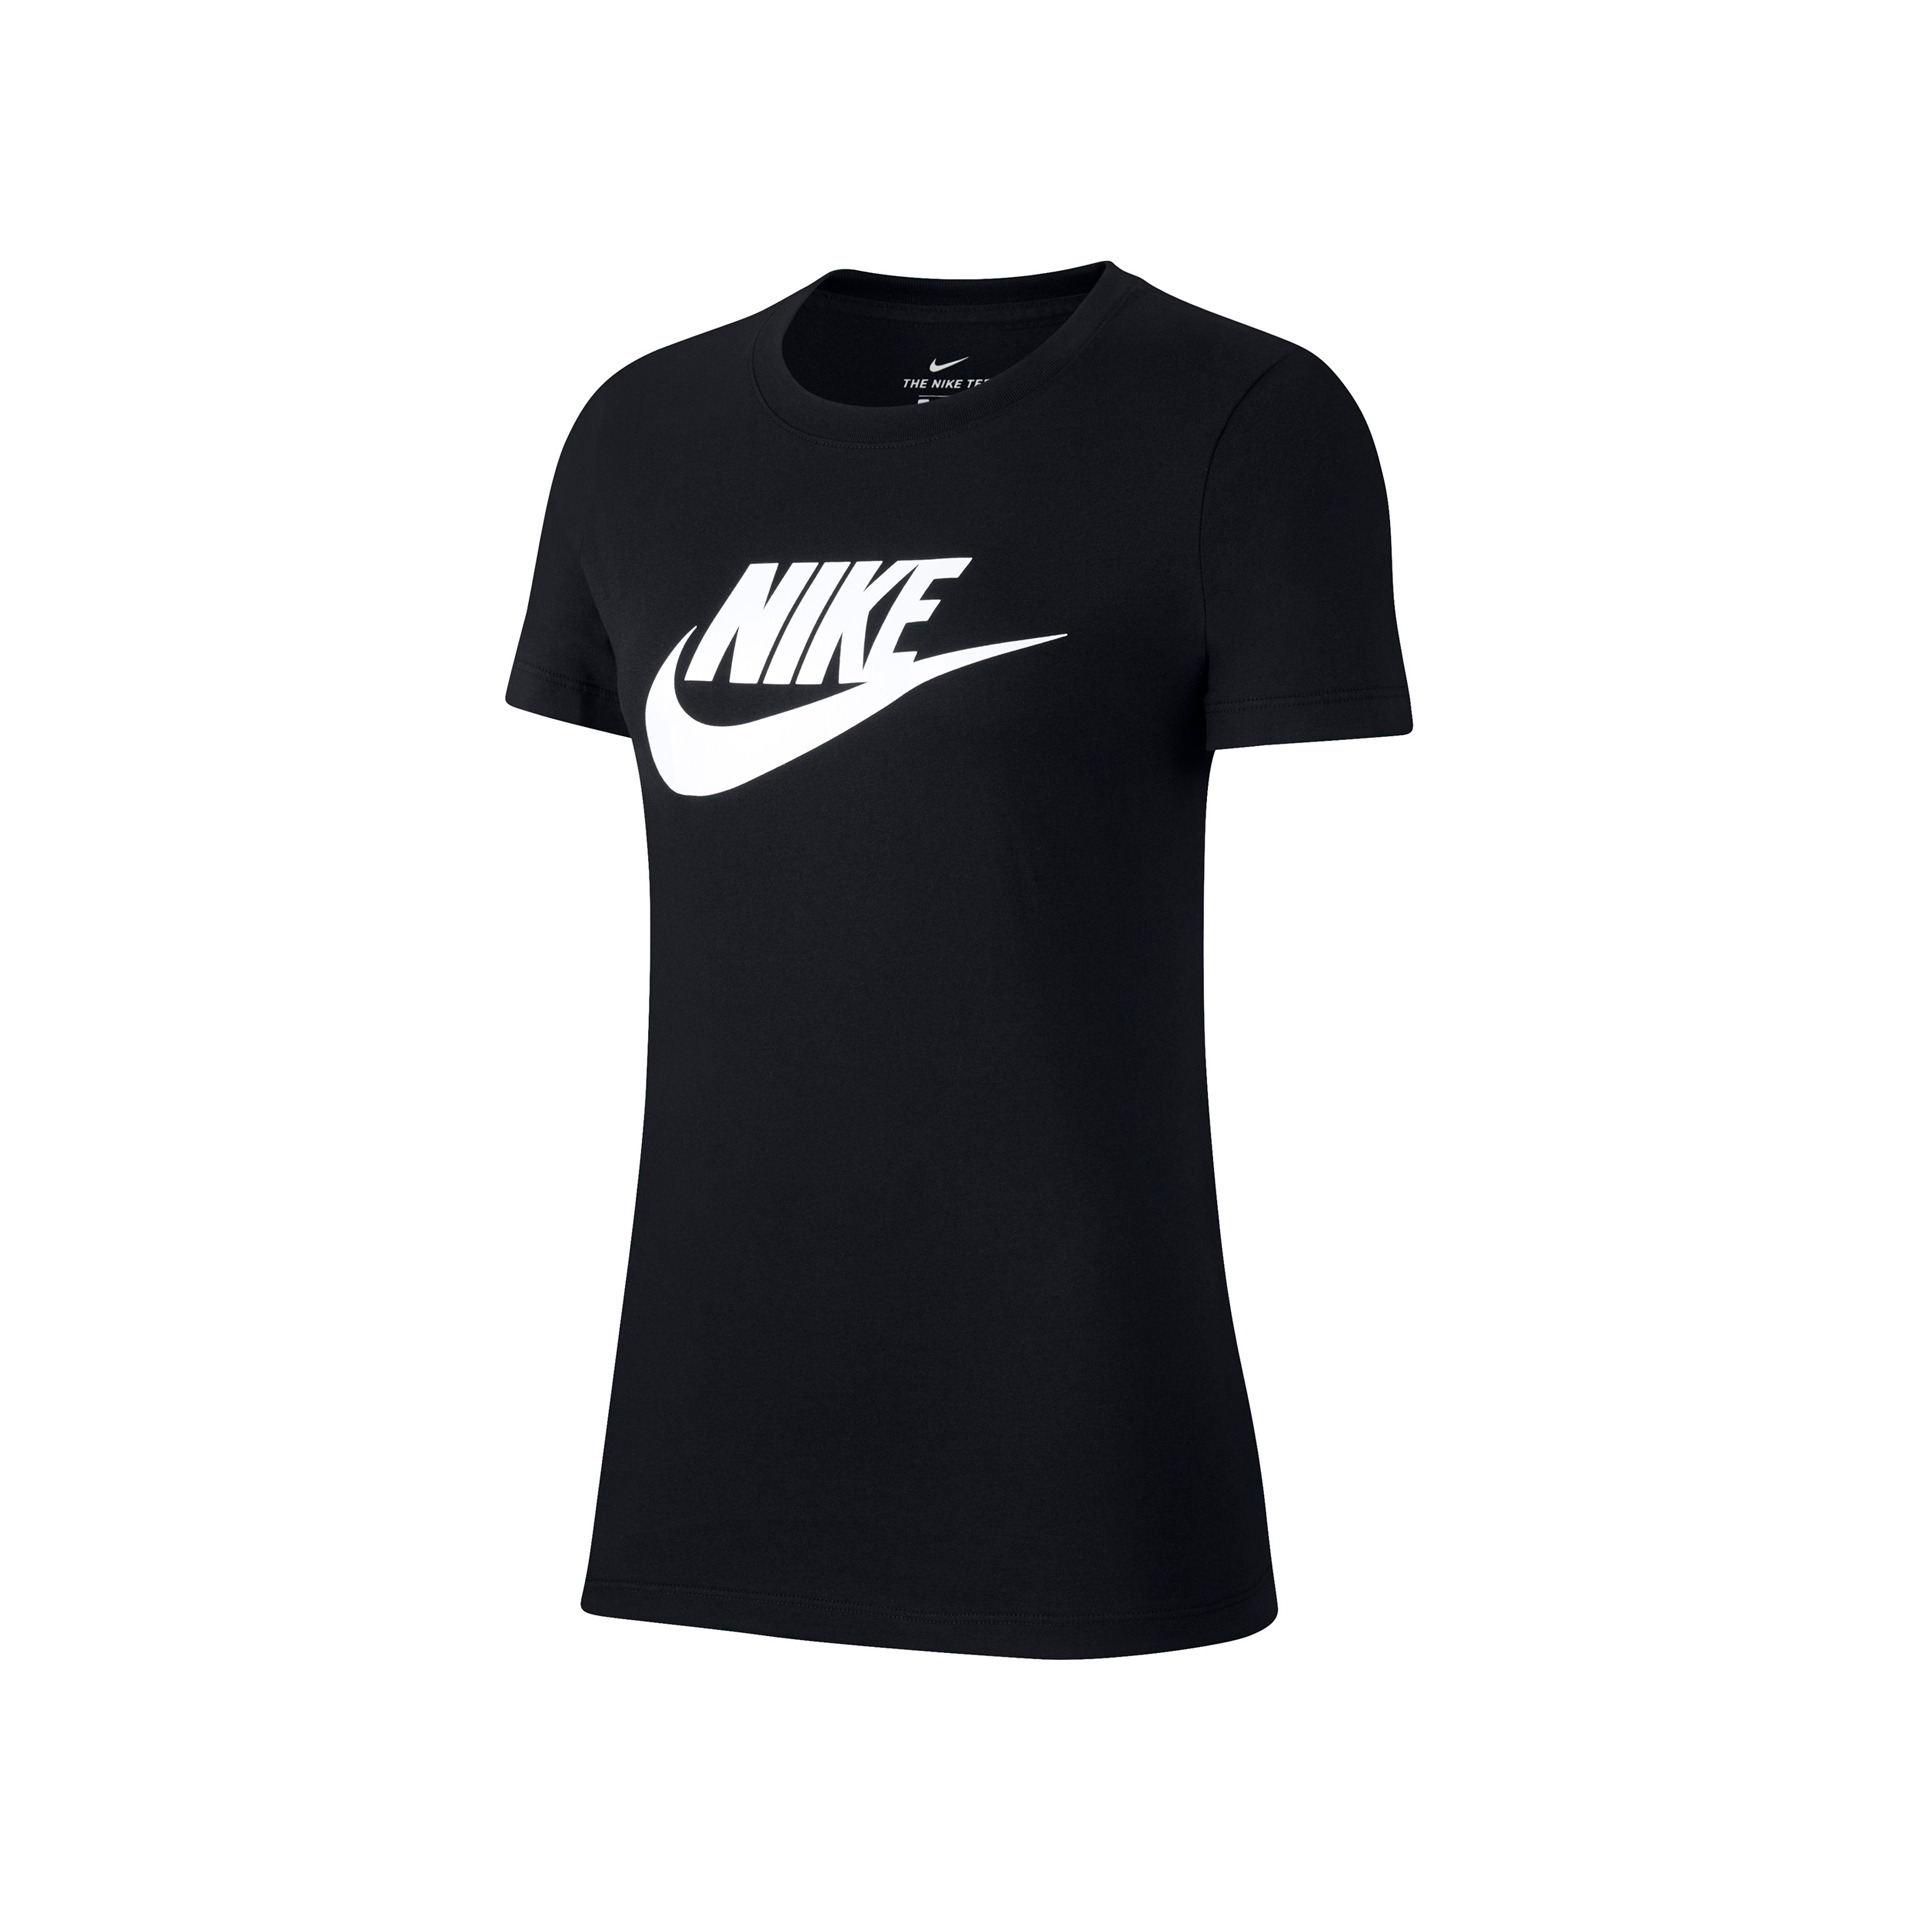 Nike Camiseta Mujer W NSW TEE ESSNTL ICON FUTUR vista frontal